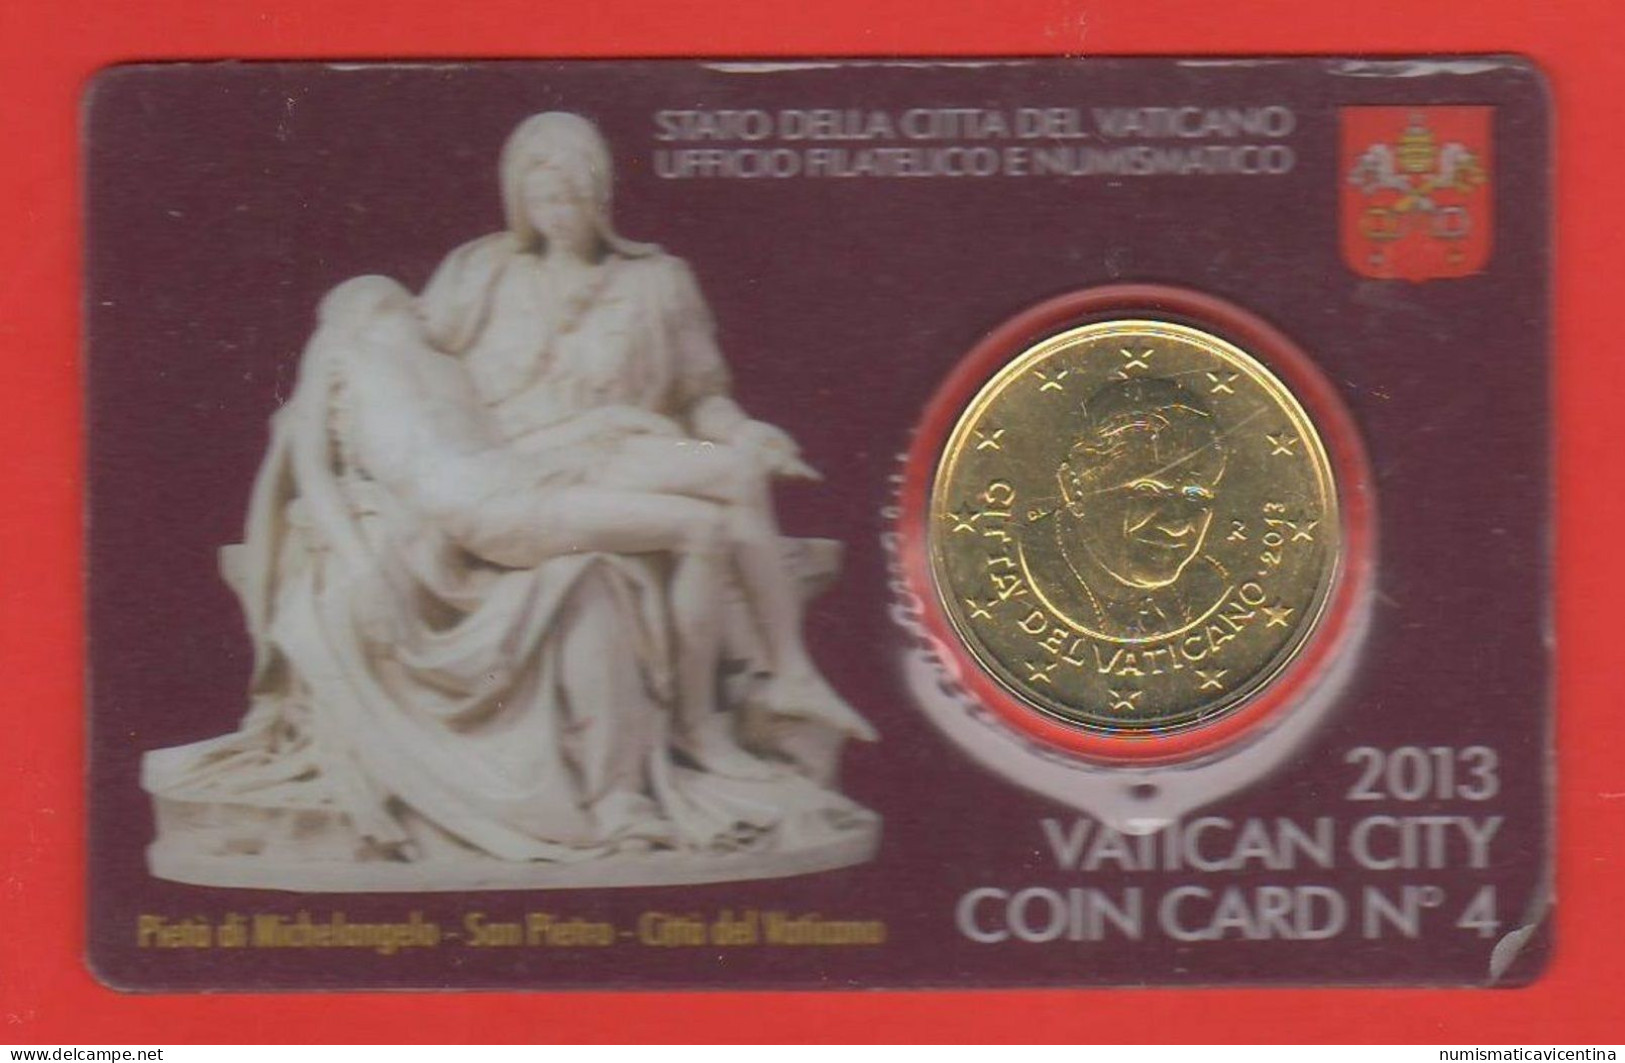 Vaticano 50 Centesimi 2013 Benedetto XVI° Coin Card N ° 4 Mint Roma 0,50 € Vatican City - Vaticano (Ciudad Del)